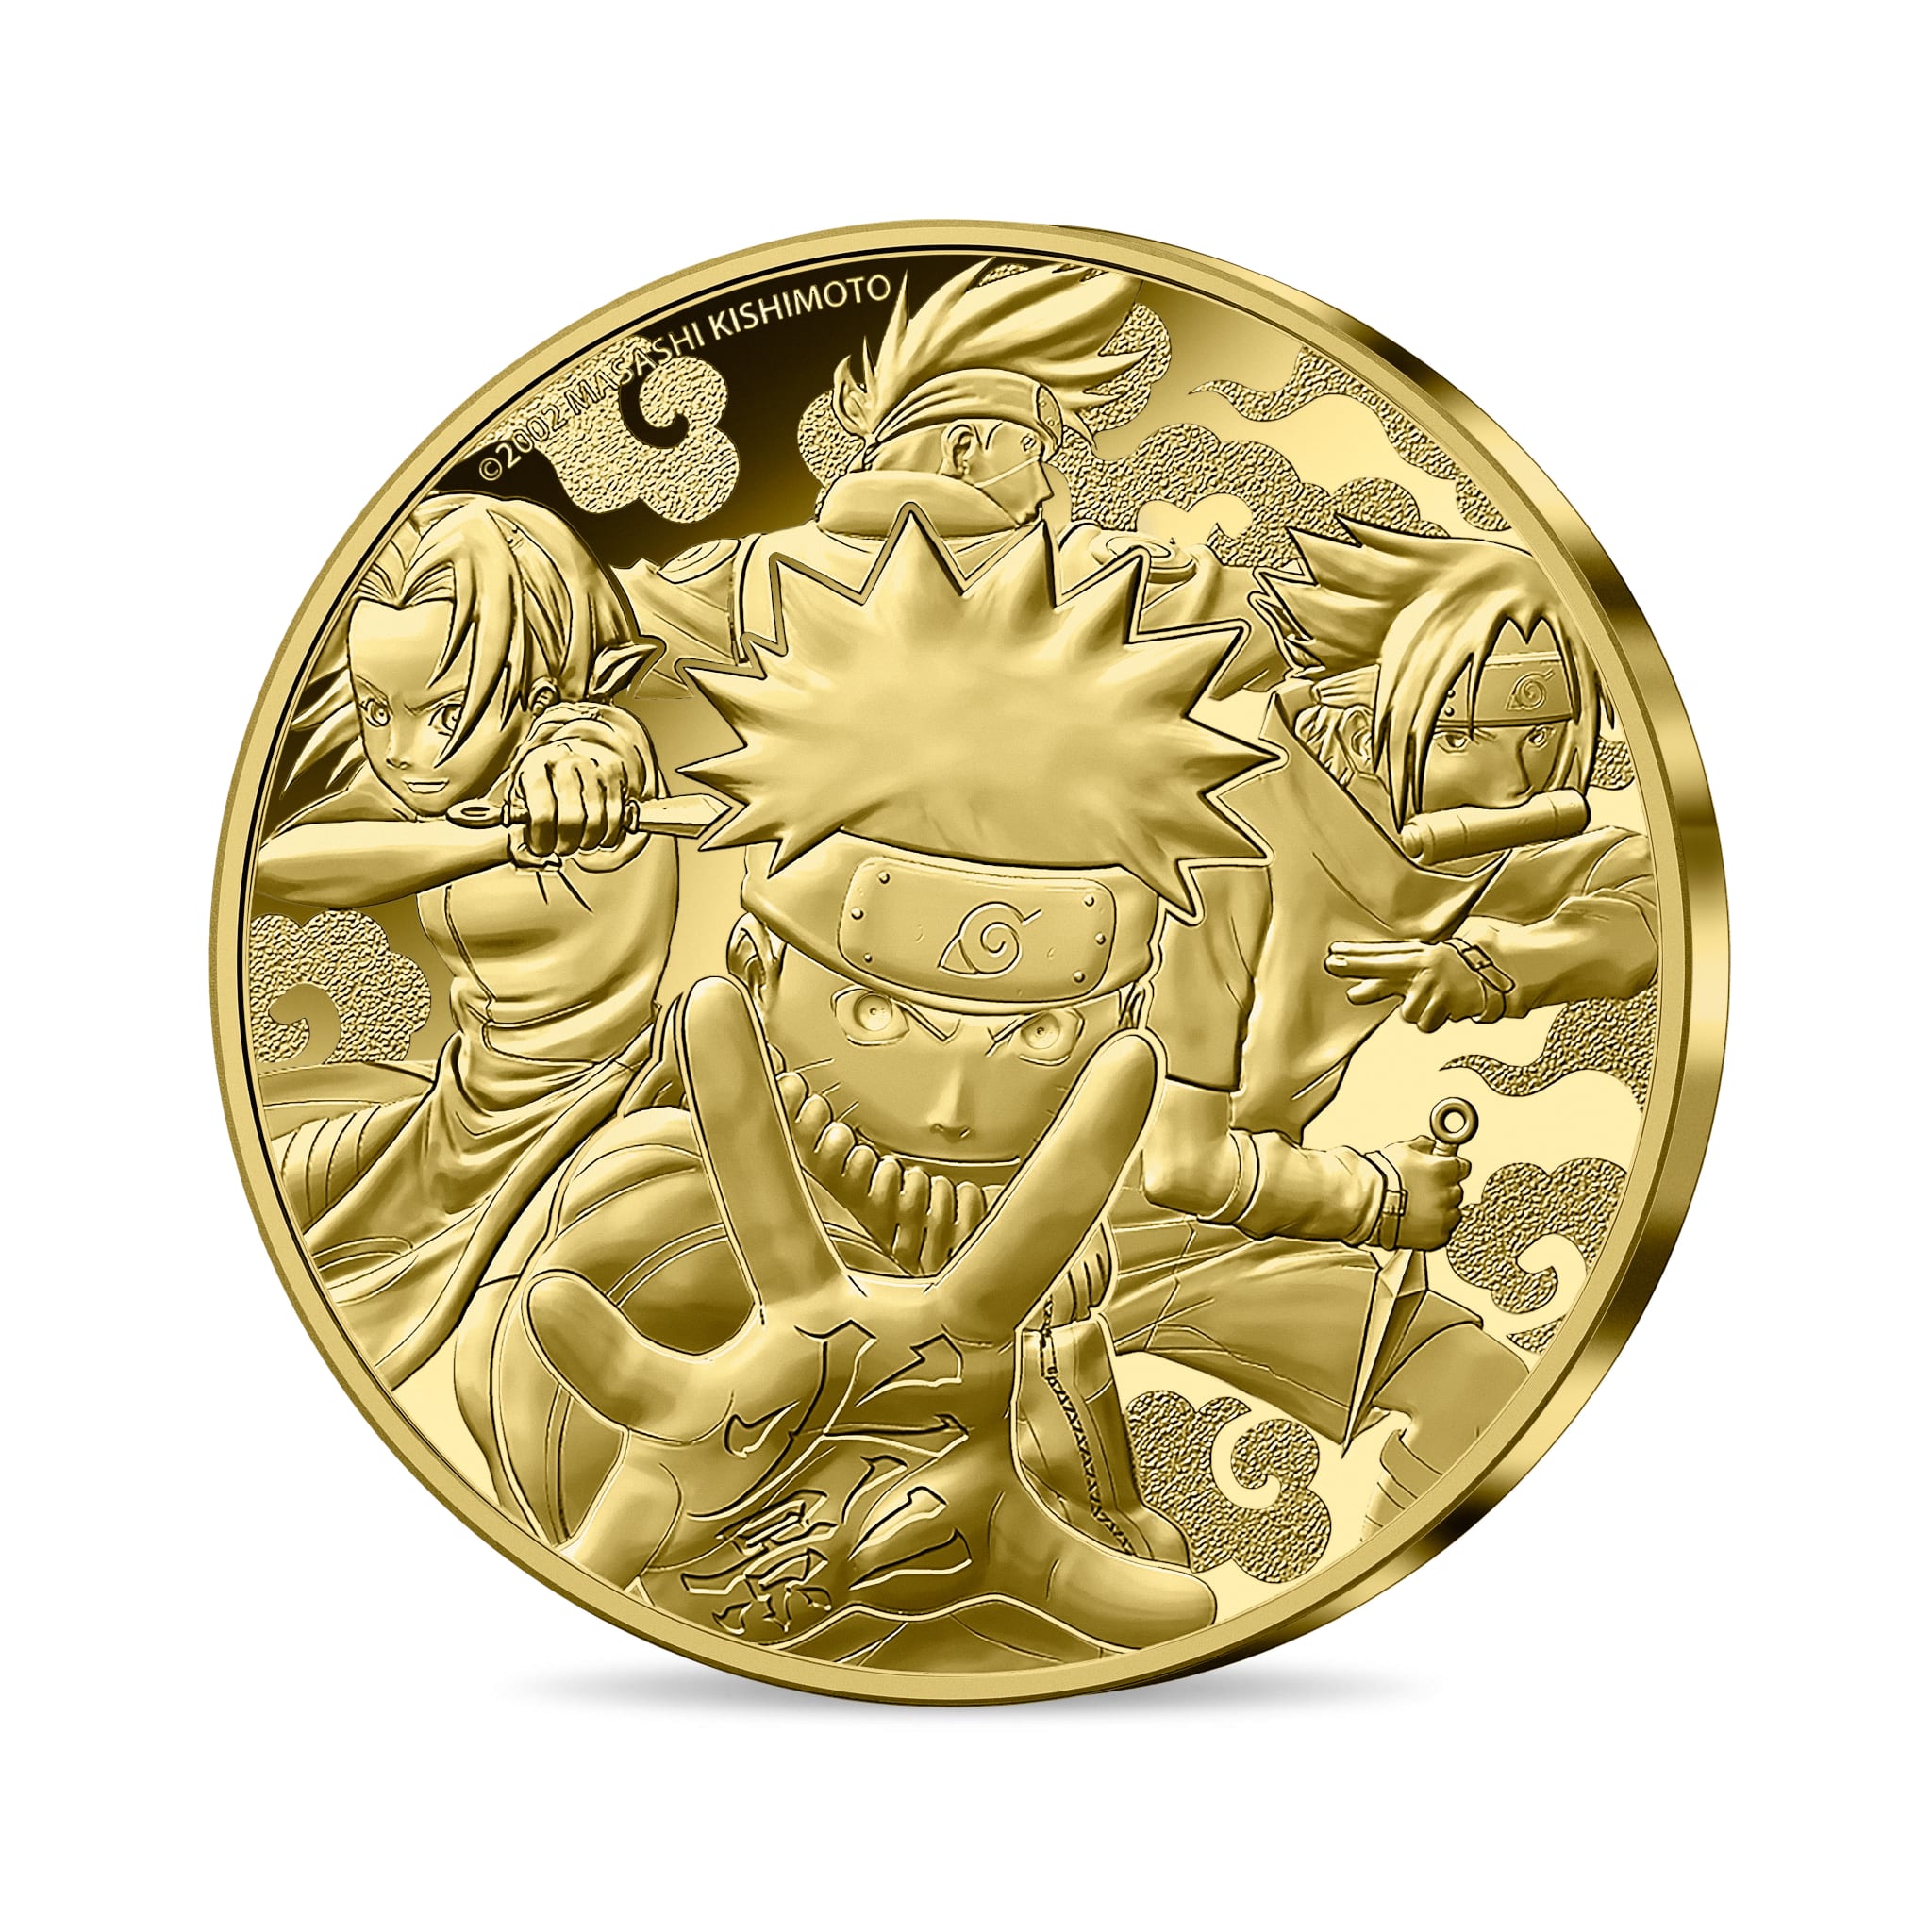 Pièce en or de la Monnaie de Paris à leffigie du manga Naruto